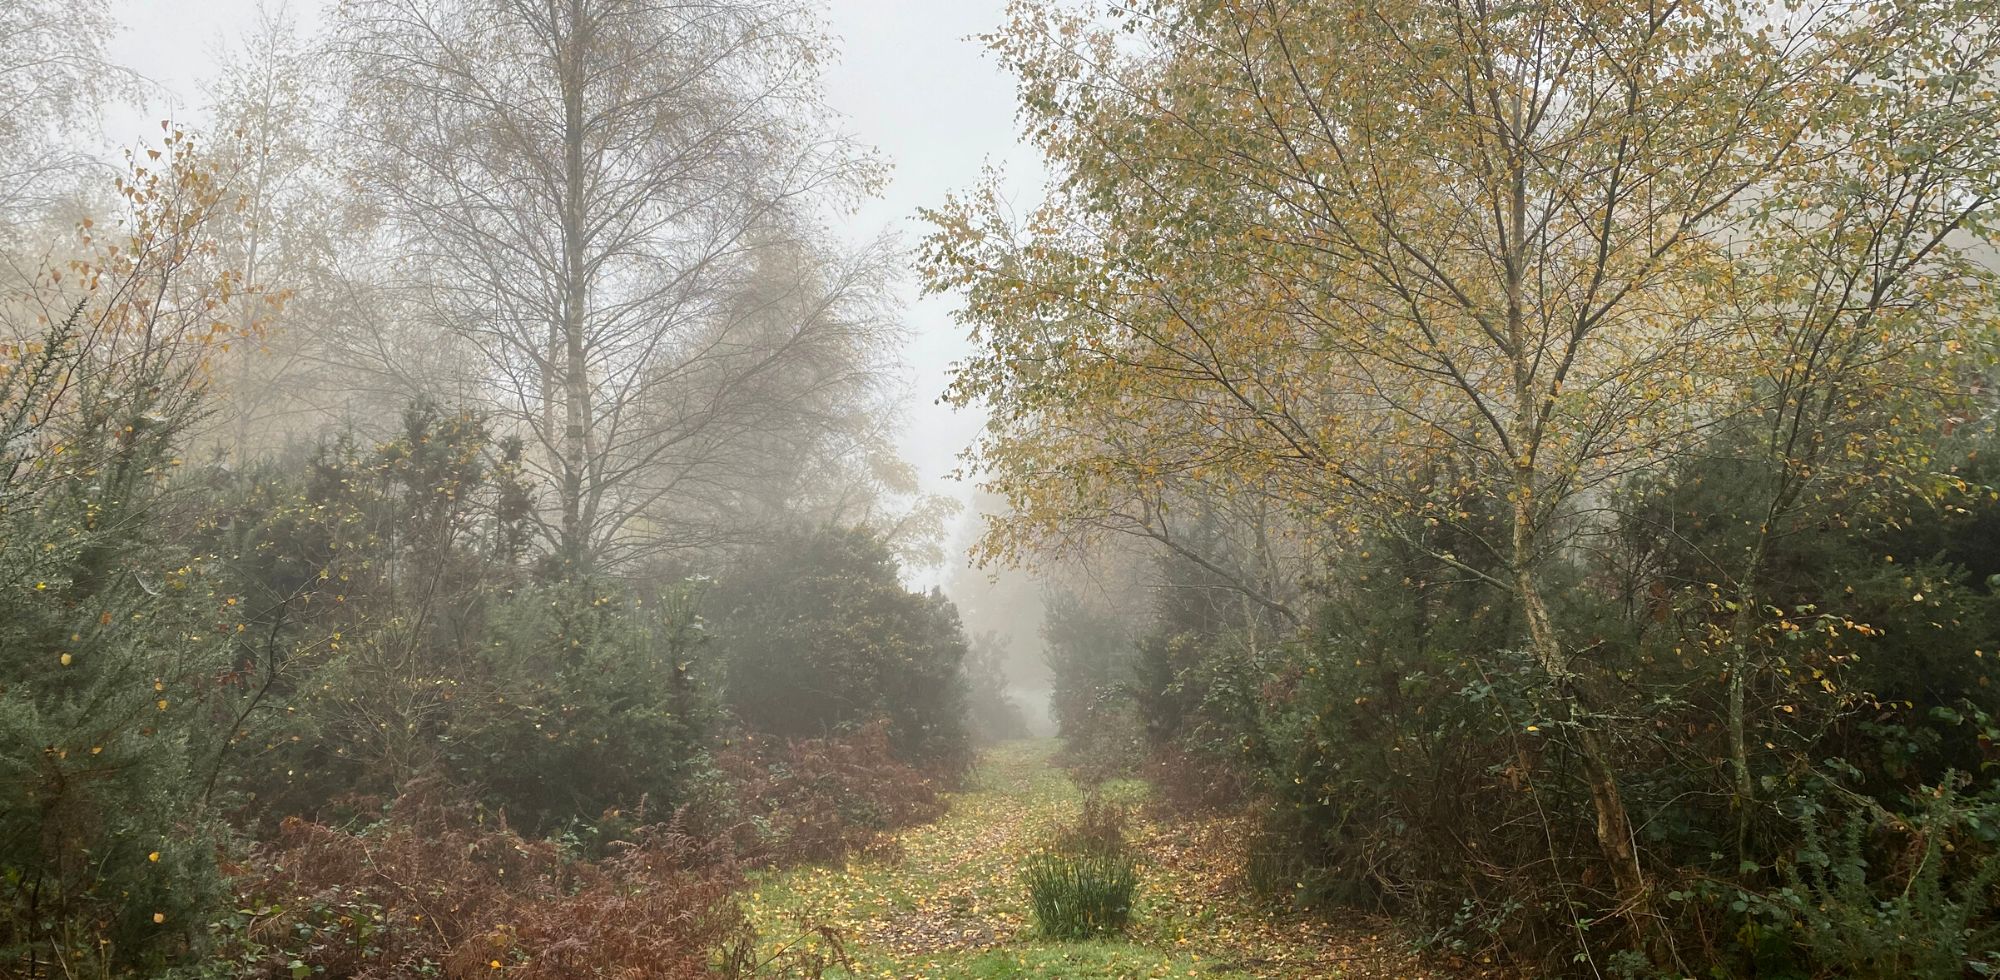 Misty path through a woodland